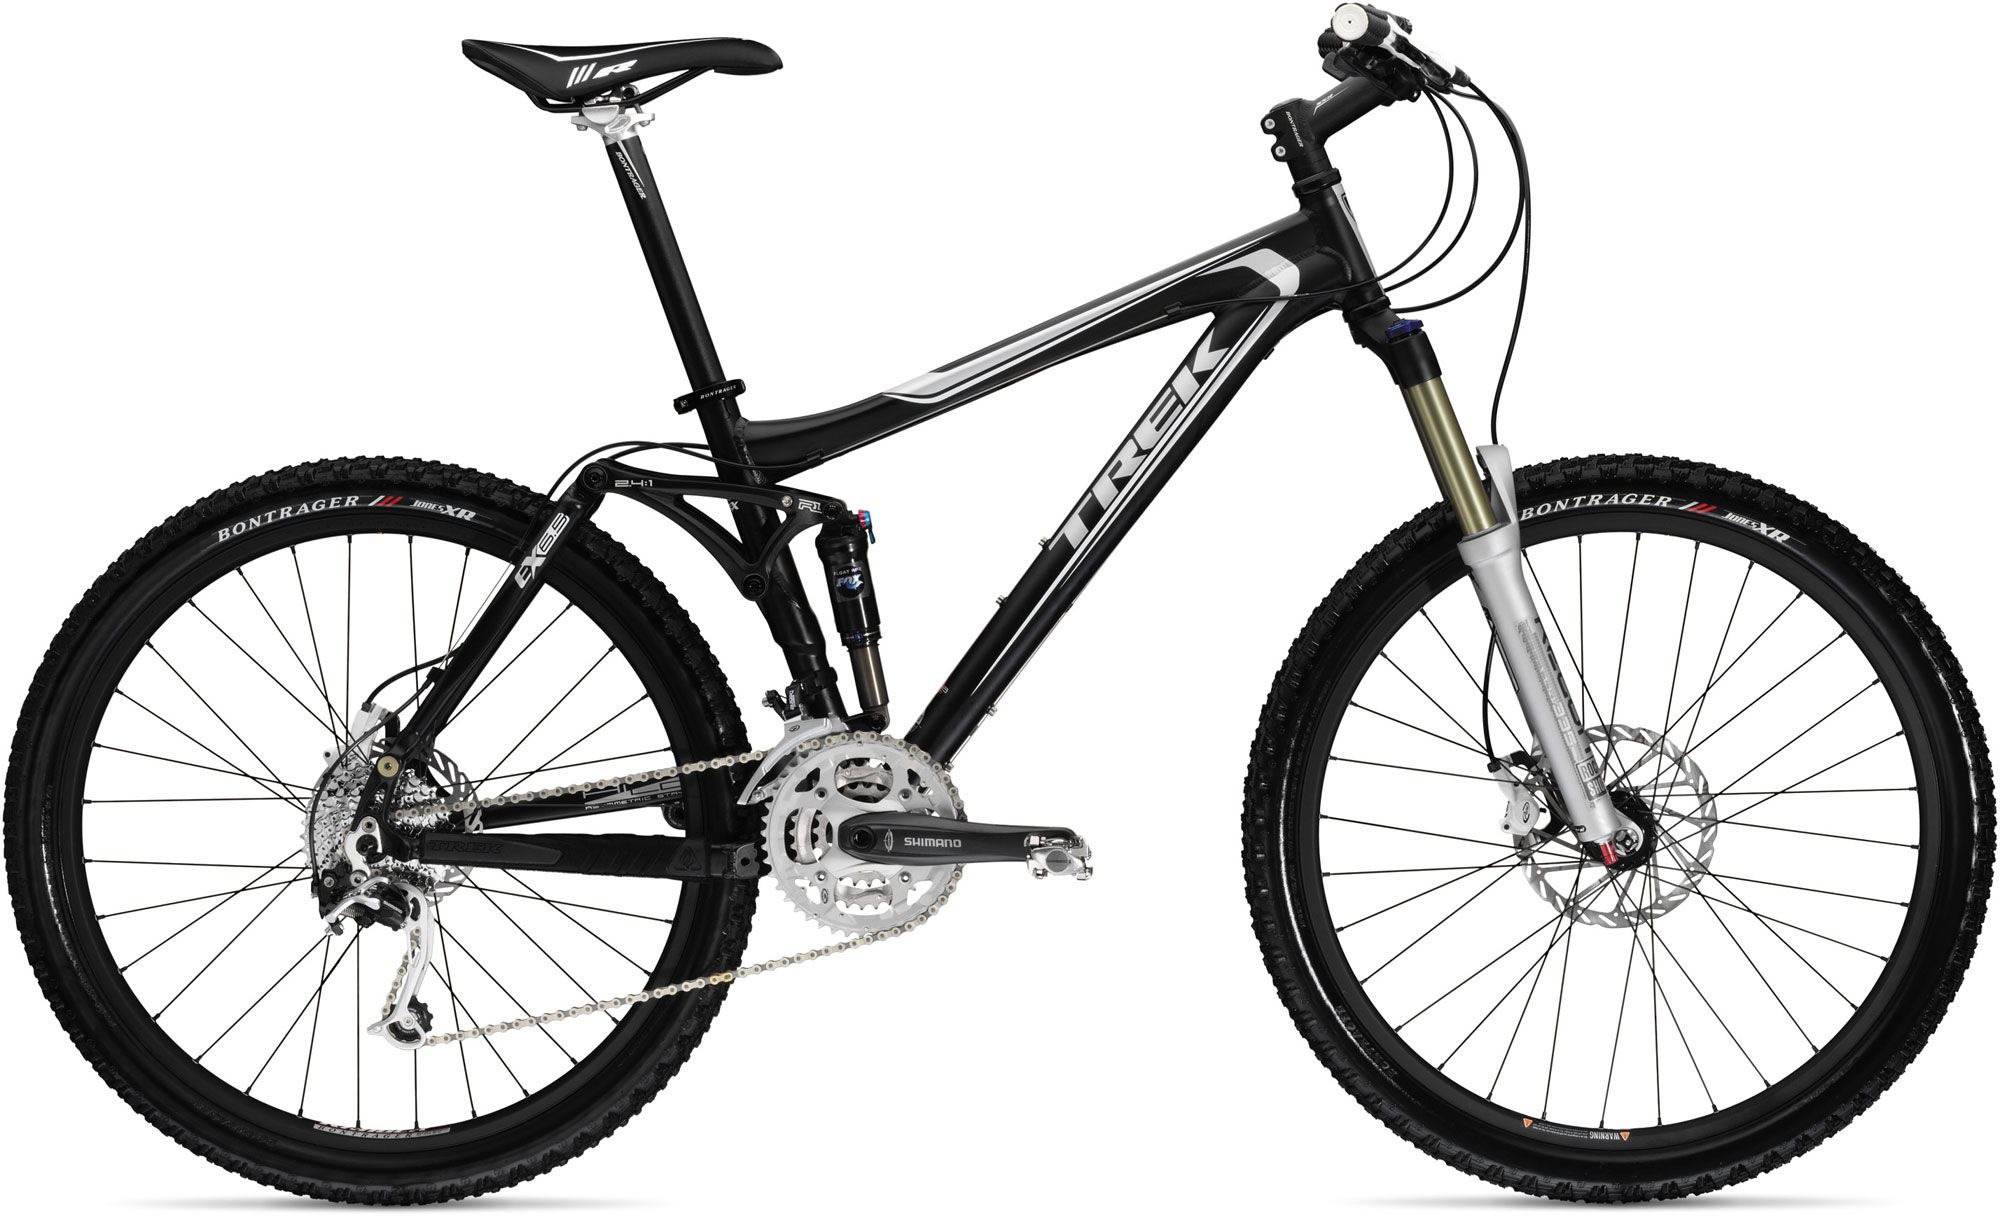 2009 Trek Fuel EX 6.5 - Bicycle Details 